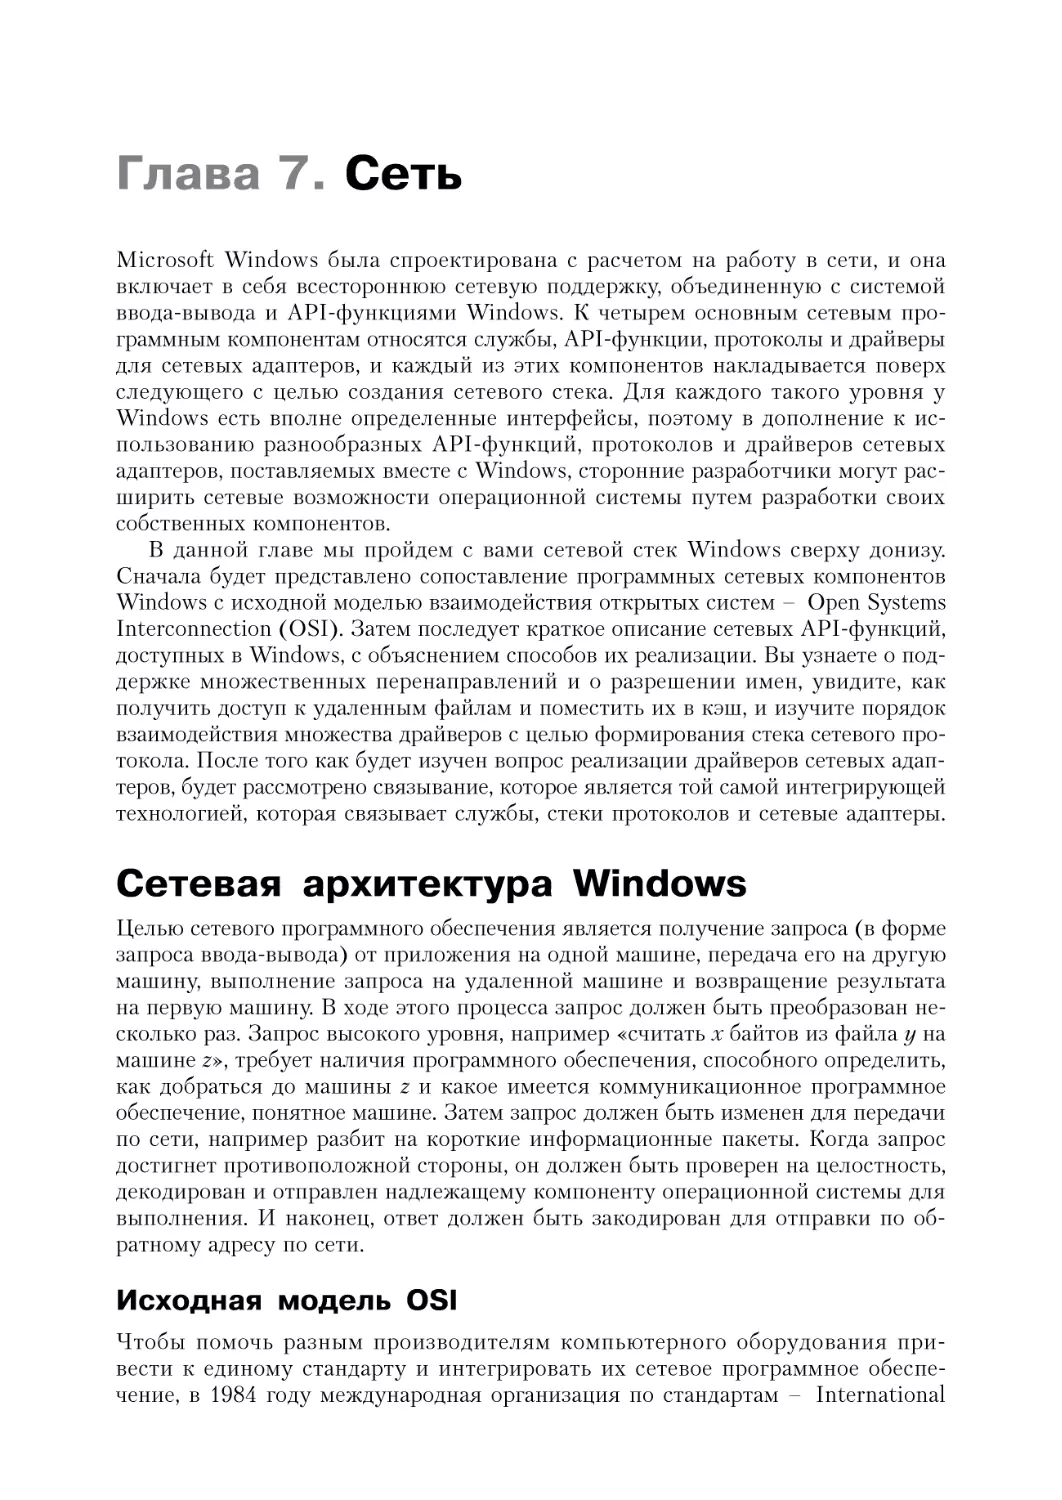 Глава 7. Сеть
Сетевая архитектура Windows
Исходная модель OSI